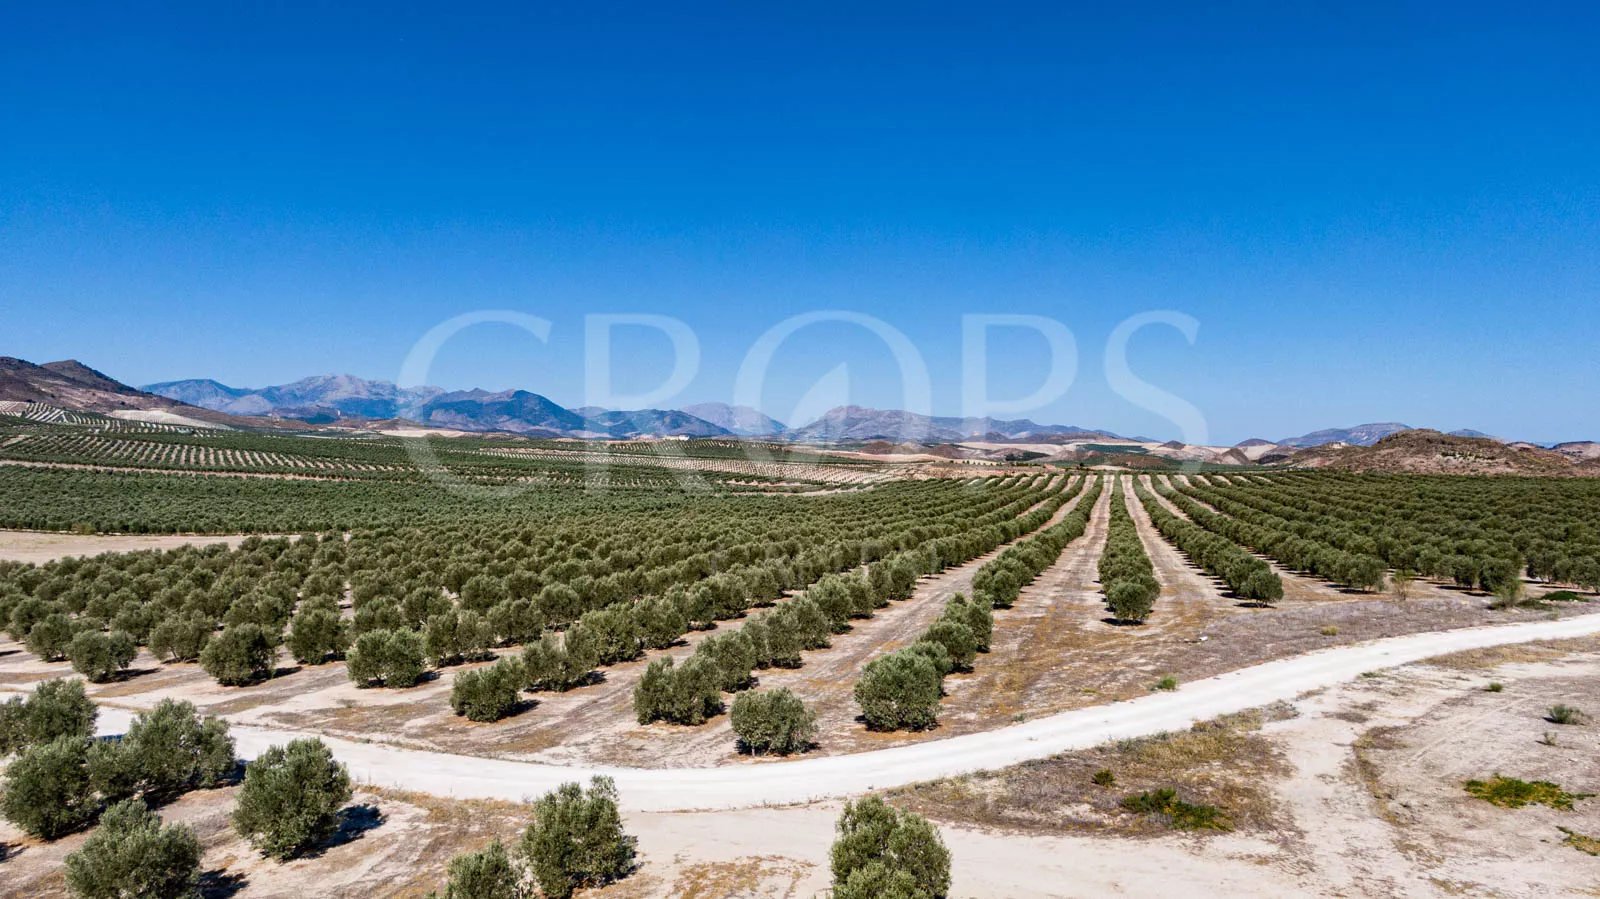 En venta olivar en la provincia de Jaén